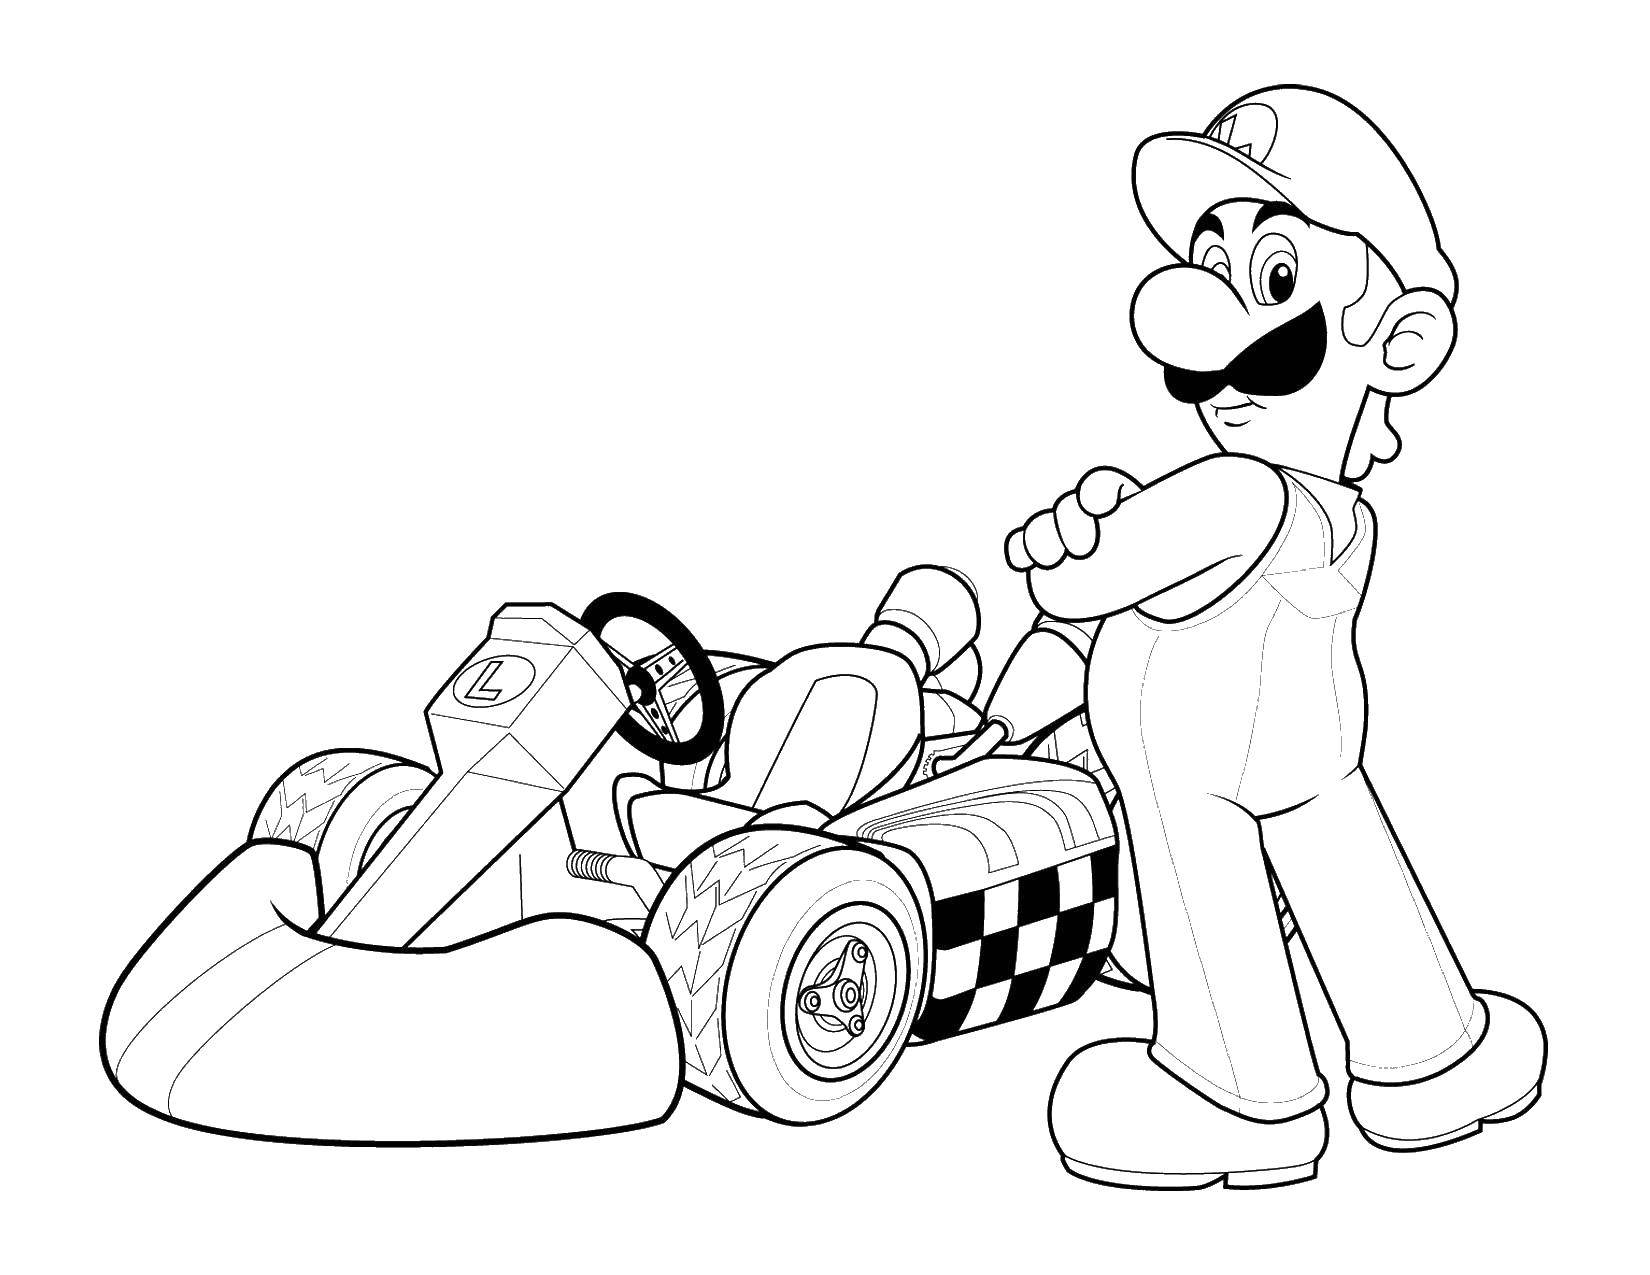 Coloring Mario and car racing. Category Mario. Tags:  games, Mario, super Mario.